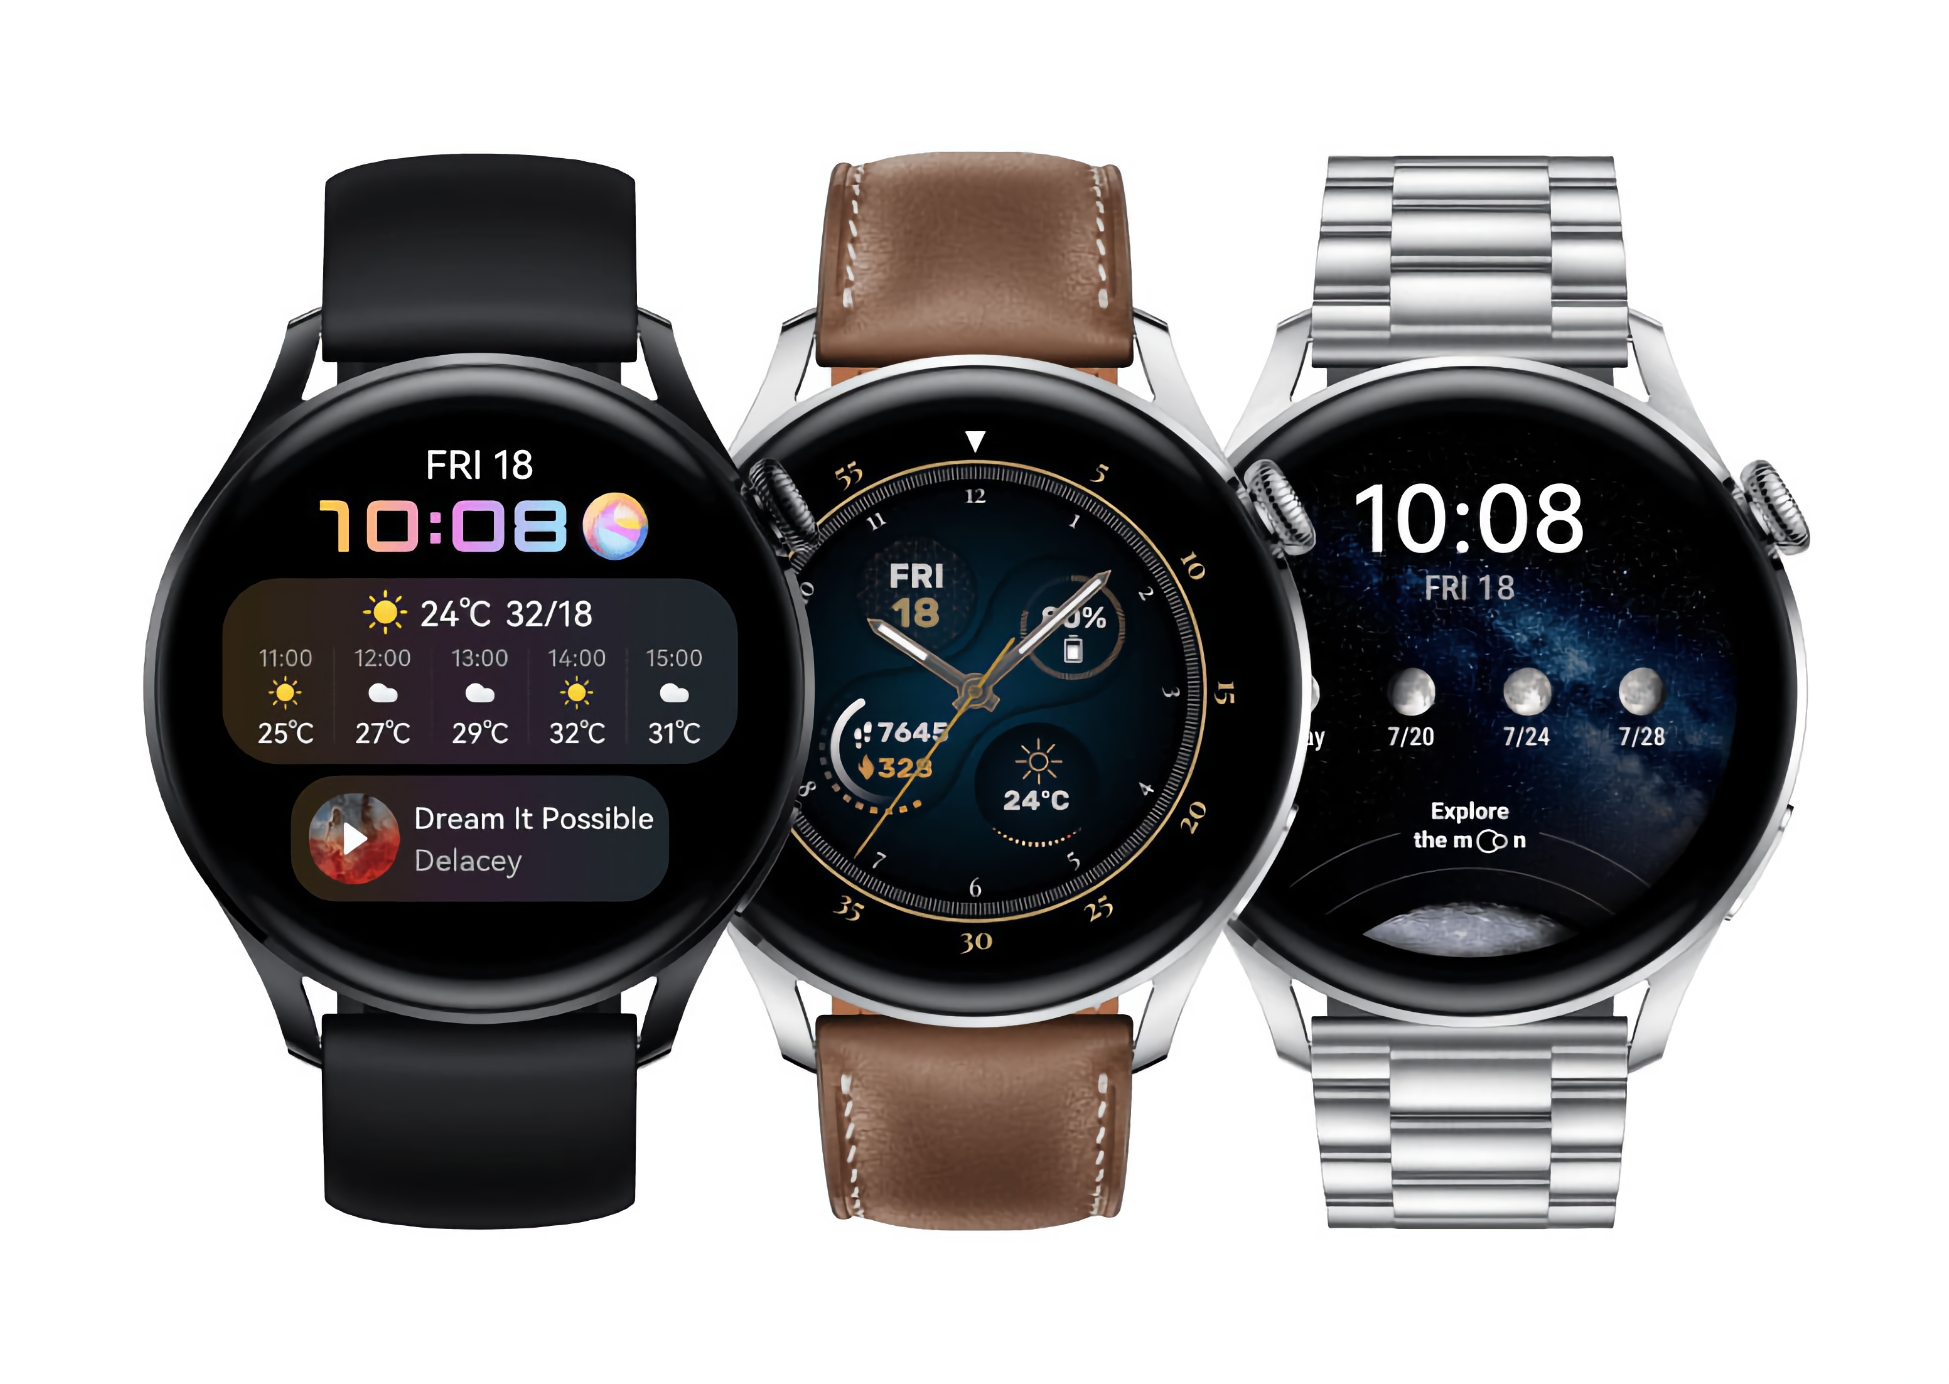 El reloj inteligente Huawei Watch 3 Pro con la actualización HarmonyOS 2.0.0.197 recibió nuevas funciones